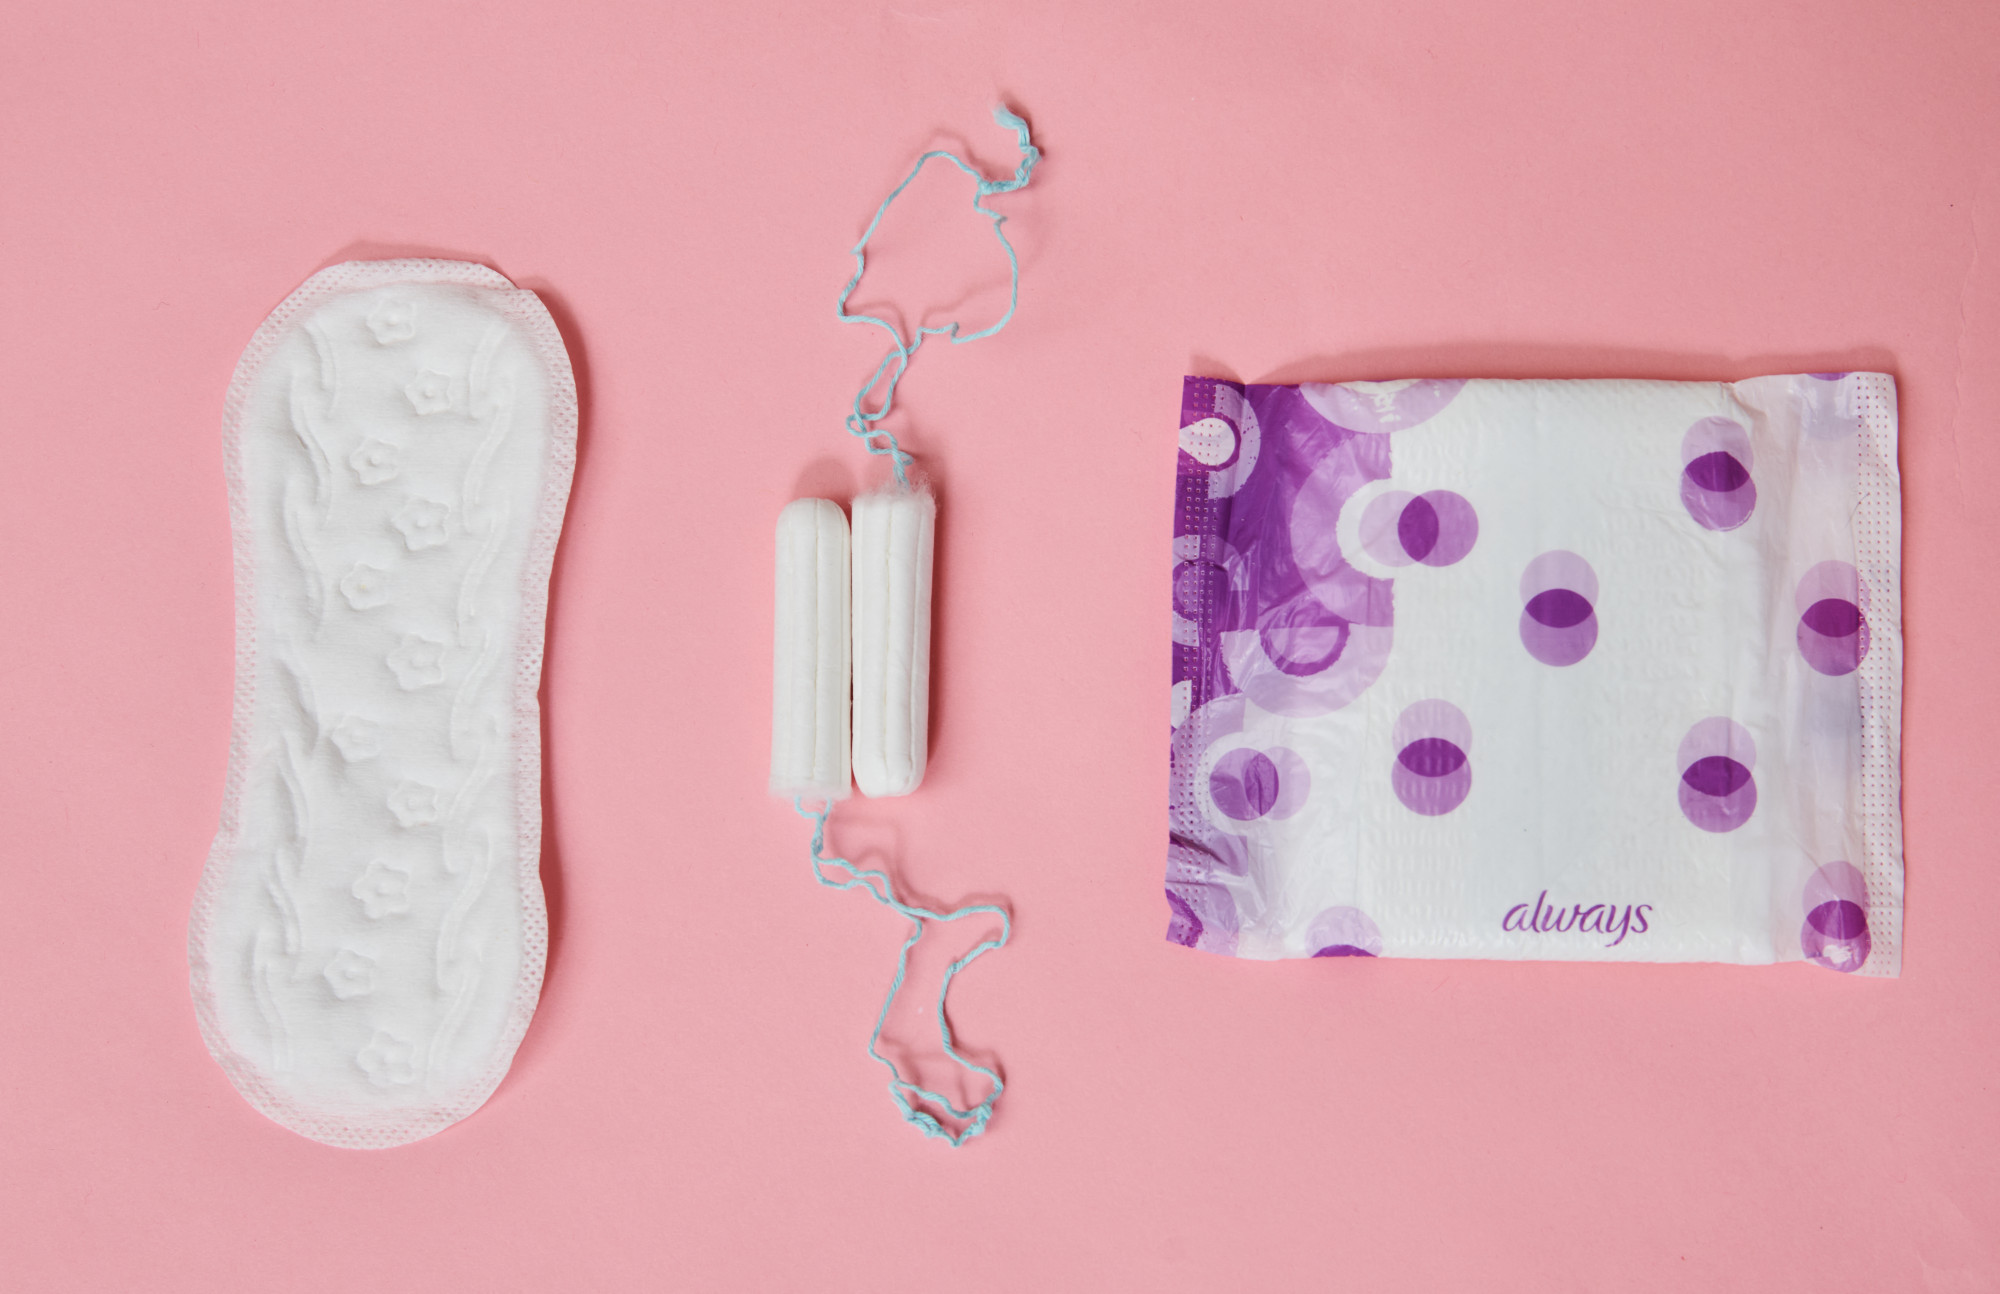 Ingyenessé tették a menstruációs termékeket Skóciában